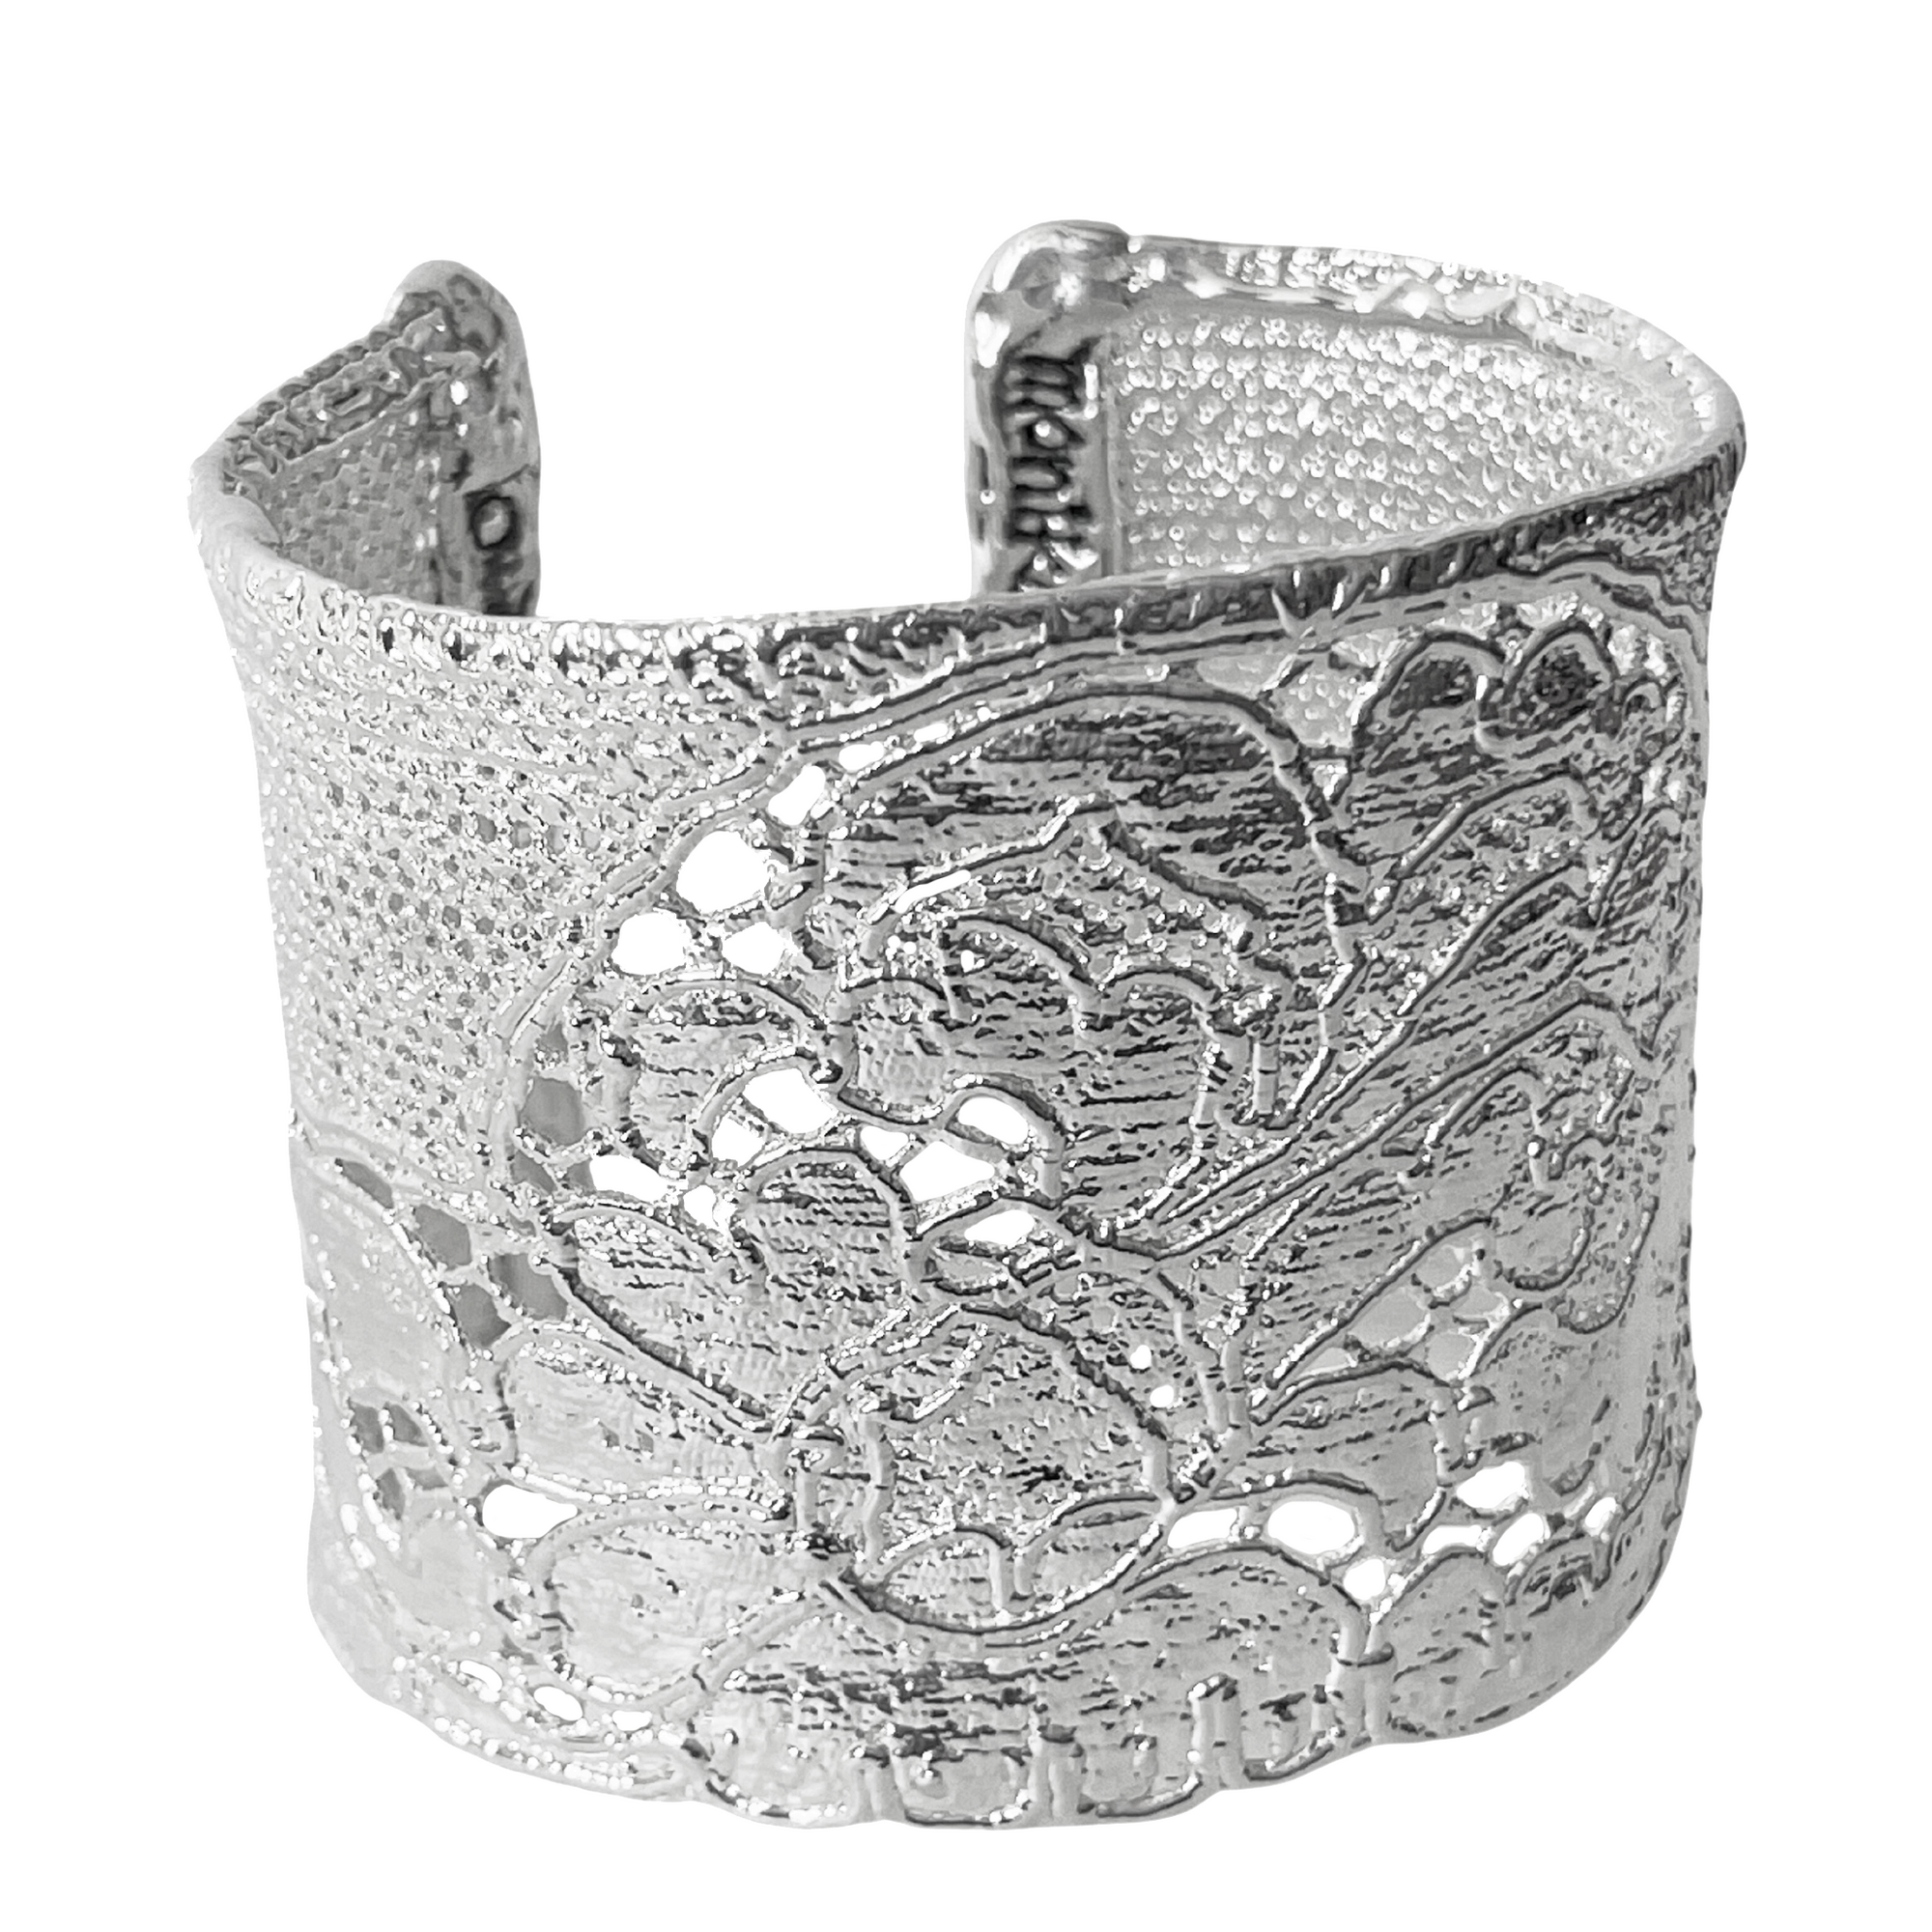 Art Deco Georgette Lace cuff bracelet in sterling silver.